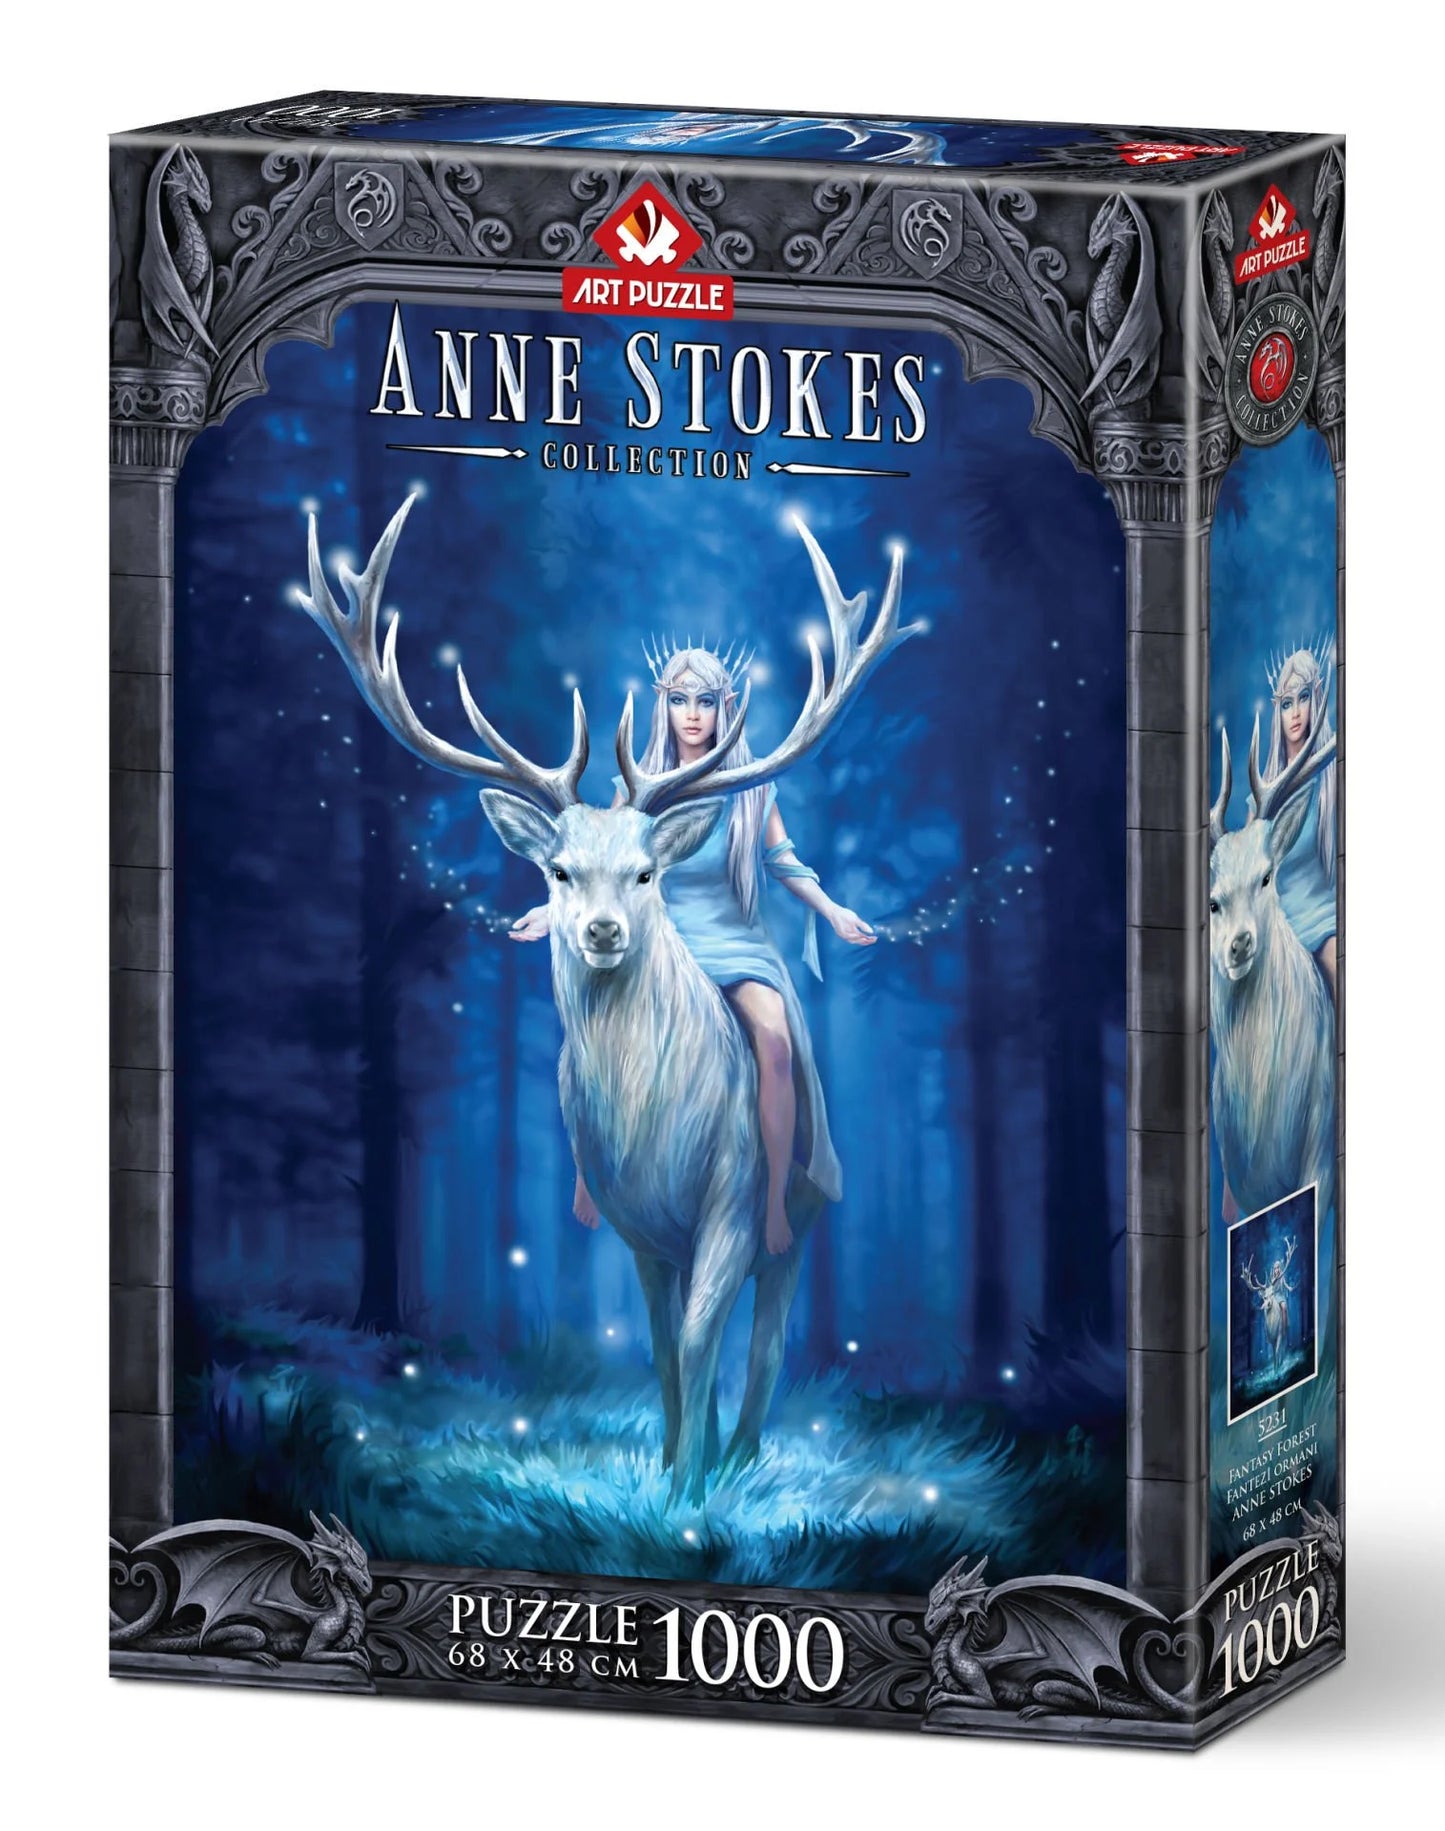 Fantasy Forest af Anne Stokes, 1000 brikker puslespil